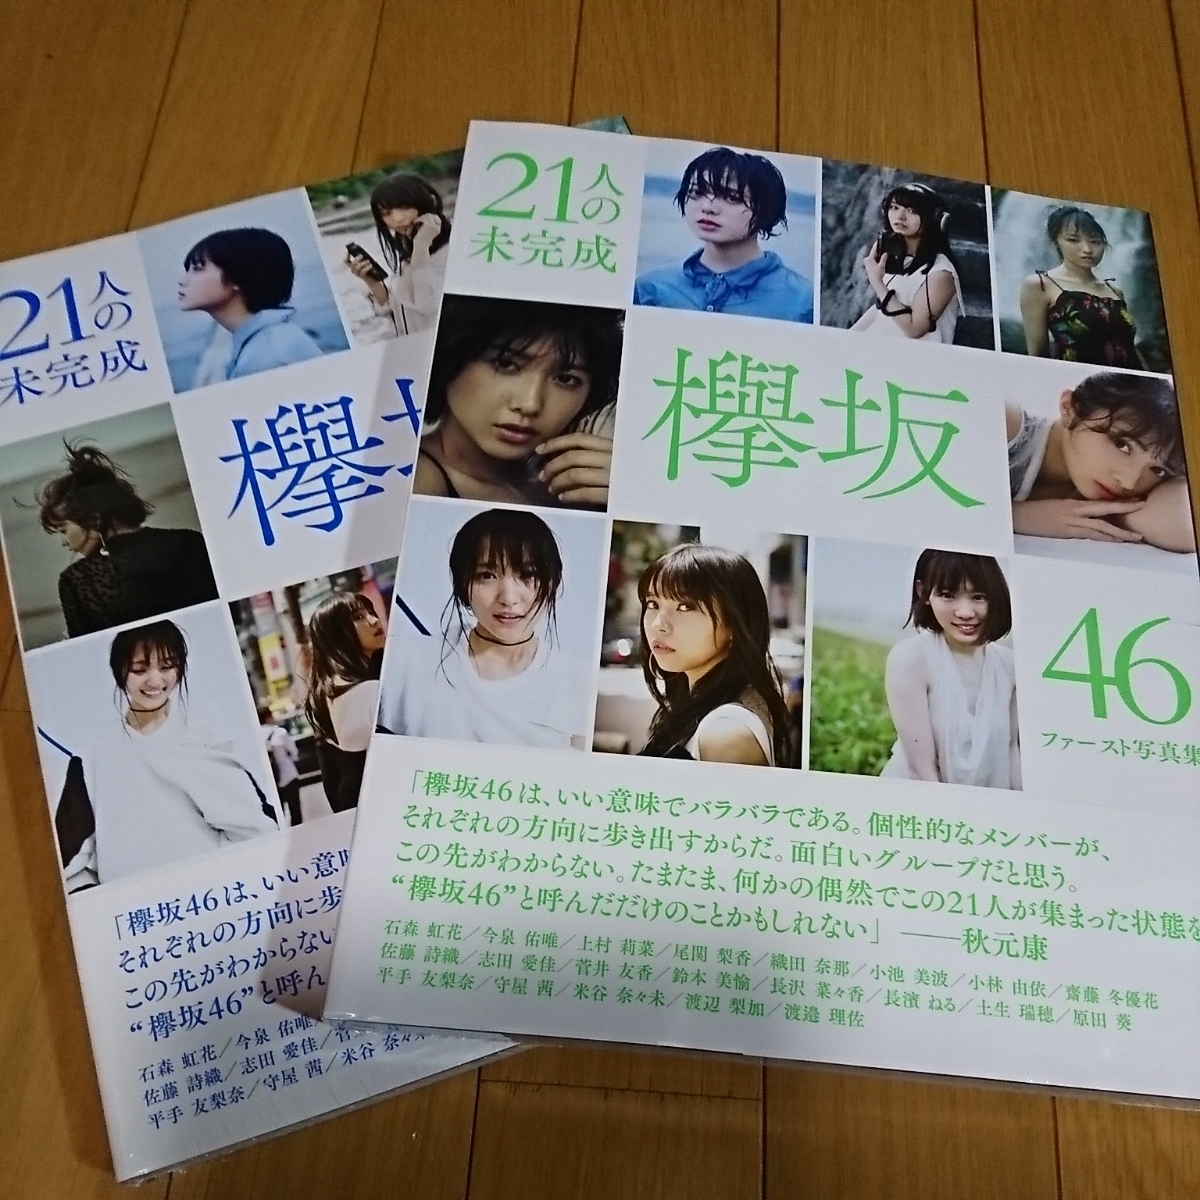 21人の未完成 欅坂46ファースト写真集 Loppi・HMV限定版 | 欅坂46